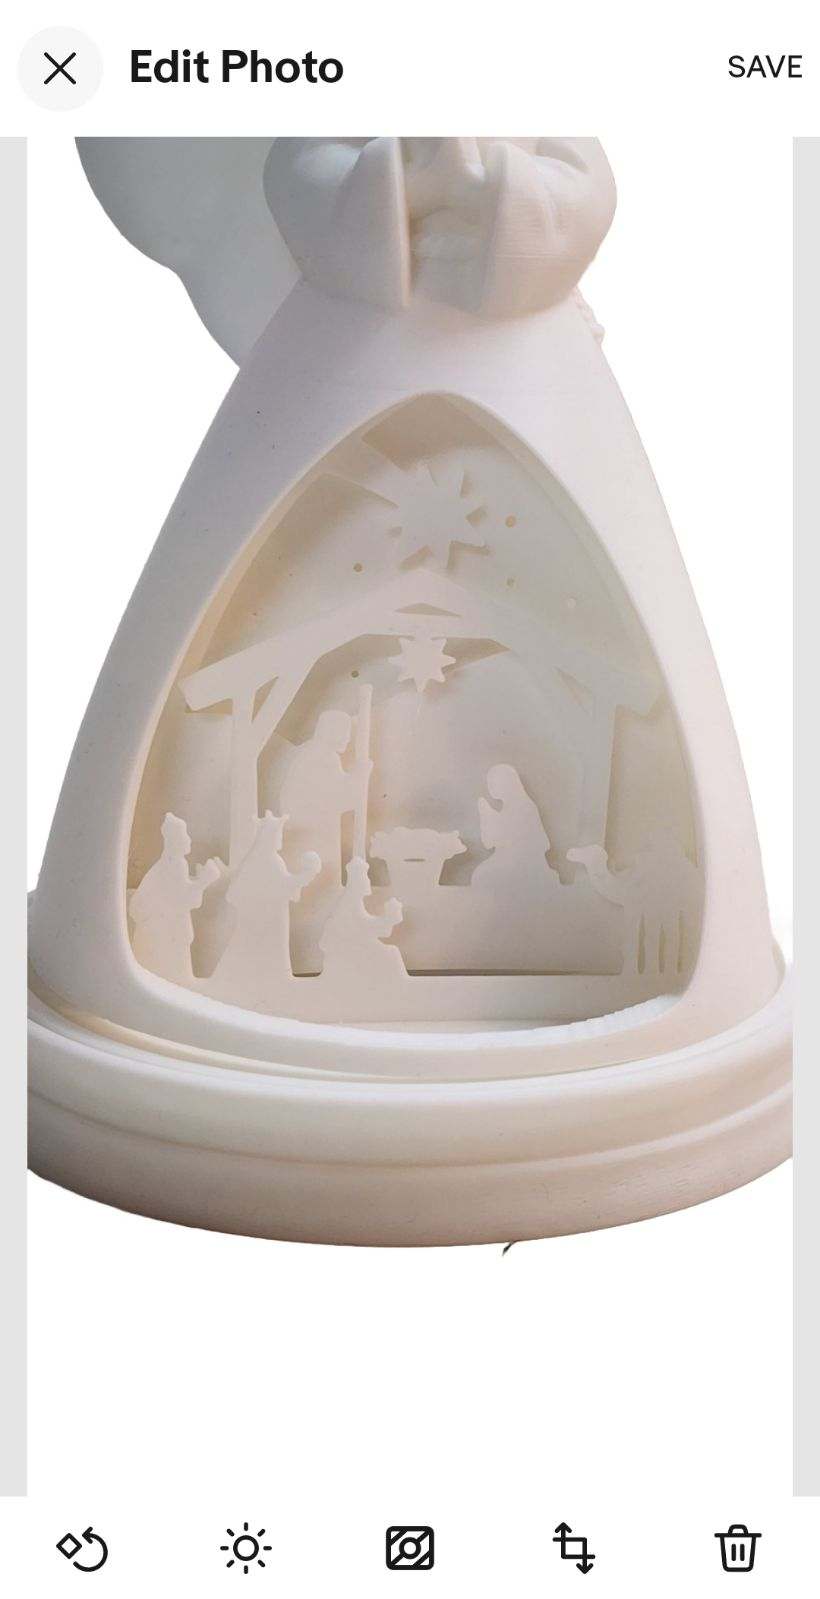 Light up nativity 3D Printedew